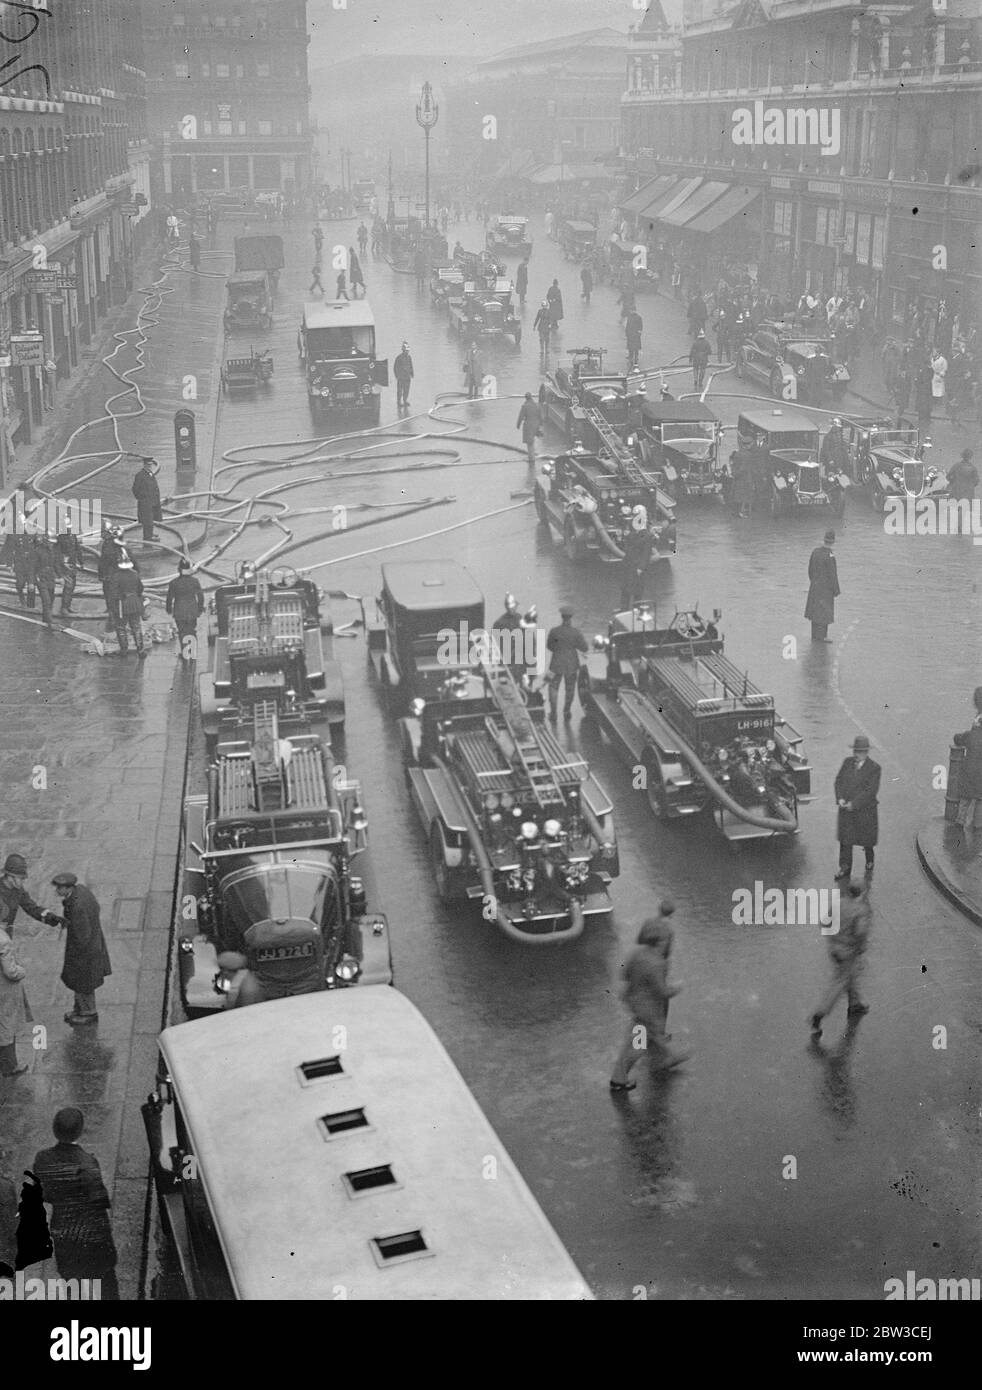 Feuer in der Stadt Gefahrenzone . Ein Bezirksfeuerruf wurde zirkuliert, als ein Feuer in einem großen Gebäude in Farringdon Street, London, der Stadt Gefahrenzone ausbrach. 16. November 1934 Stockfoto